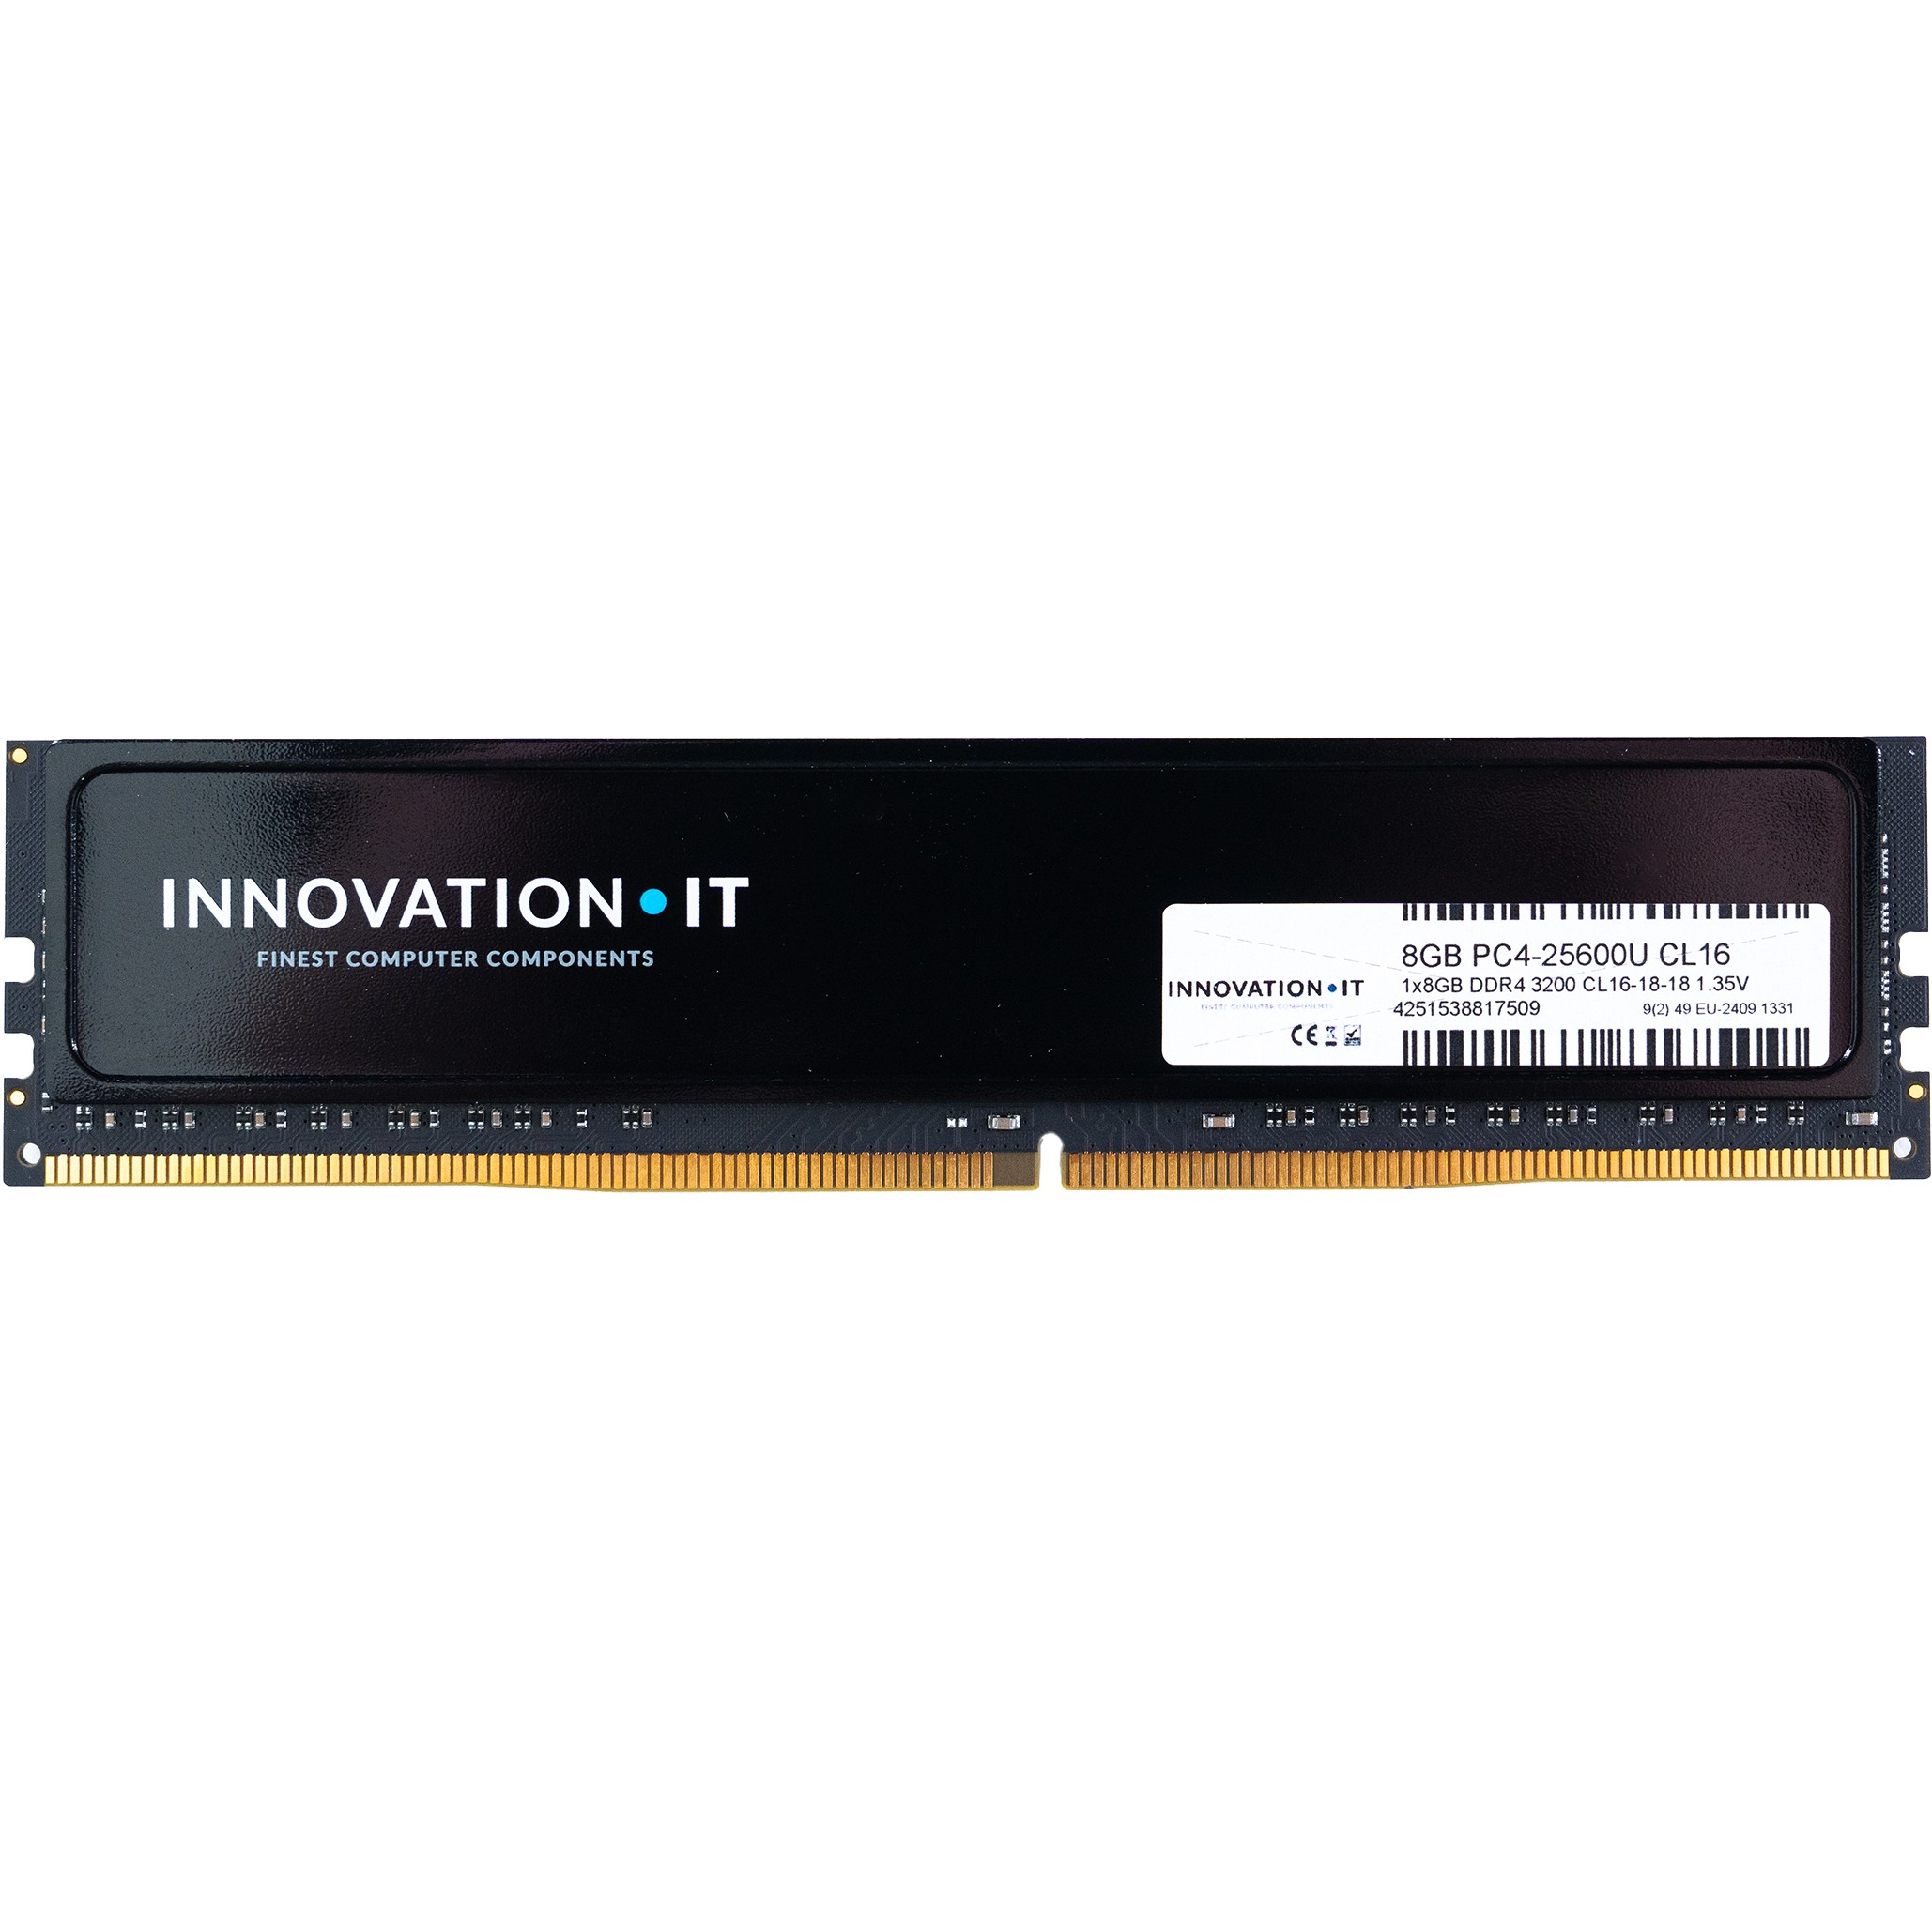 3200 8GB Innovation IT CL16 1.35V with Heatspreader (CL16-18-18) - 